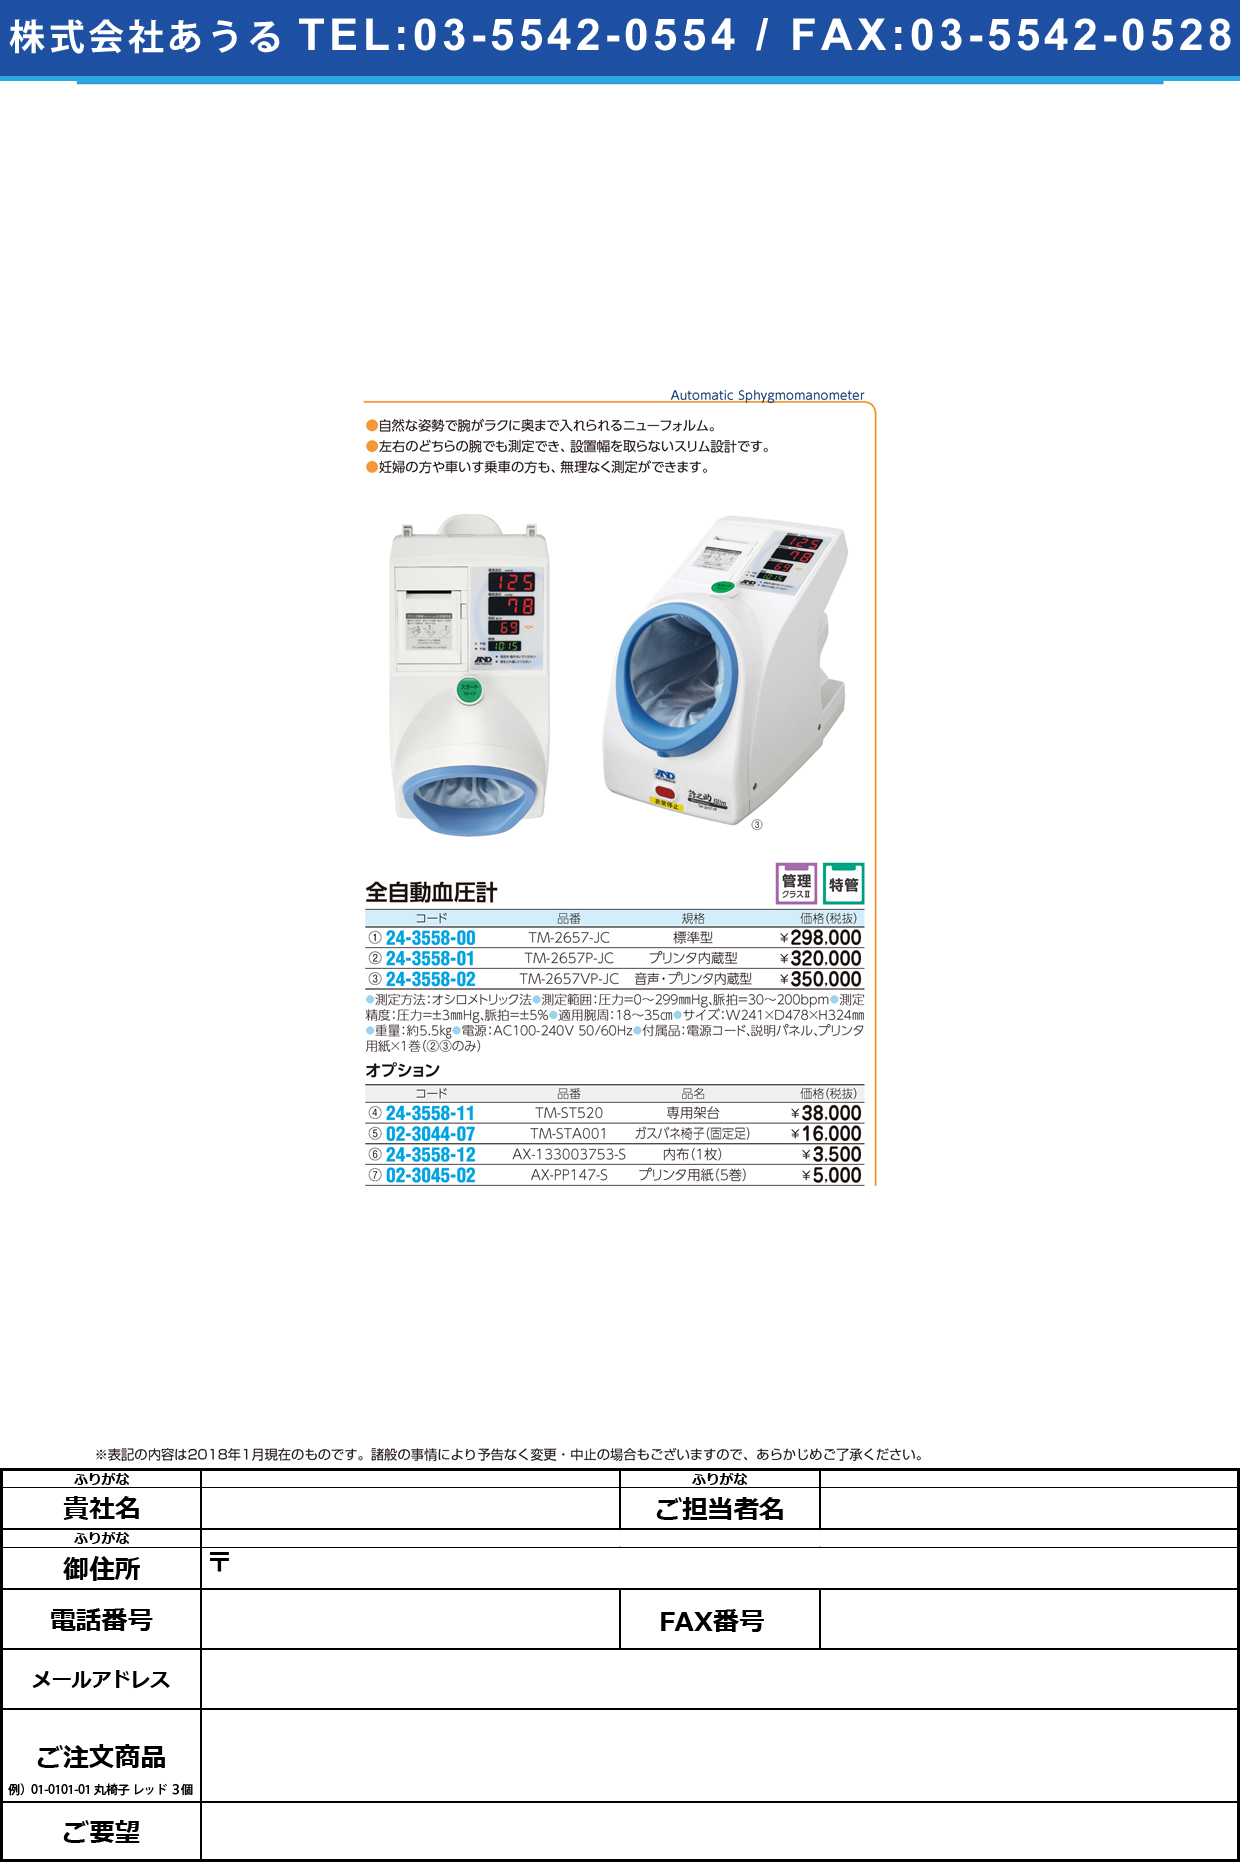 (24-3558-02)全自動血圧計（音声・プリンタ内蔵型） TM-2657VP-JC ｾﾞﾝｼﾞﾄﾞｳｹﾂｱﾂｹｲｵﾝｾｲﾌﾟ(エー・アンド・デイ)【1台単位】【2019年カタログ商品】